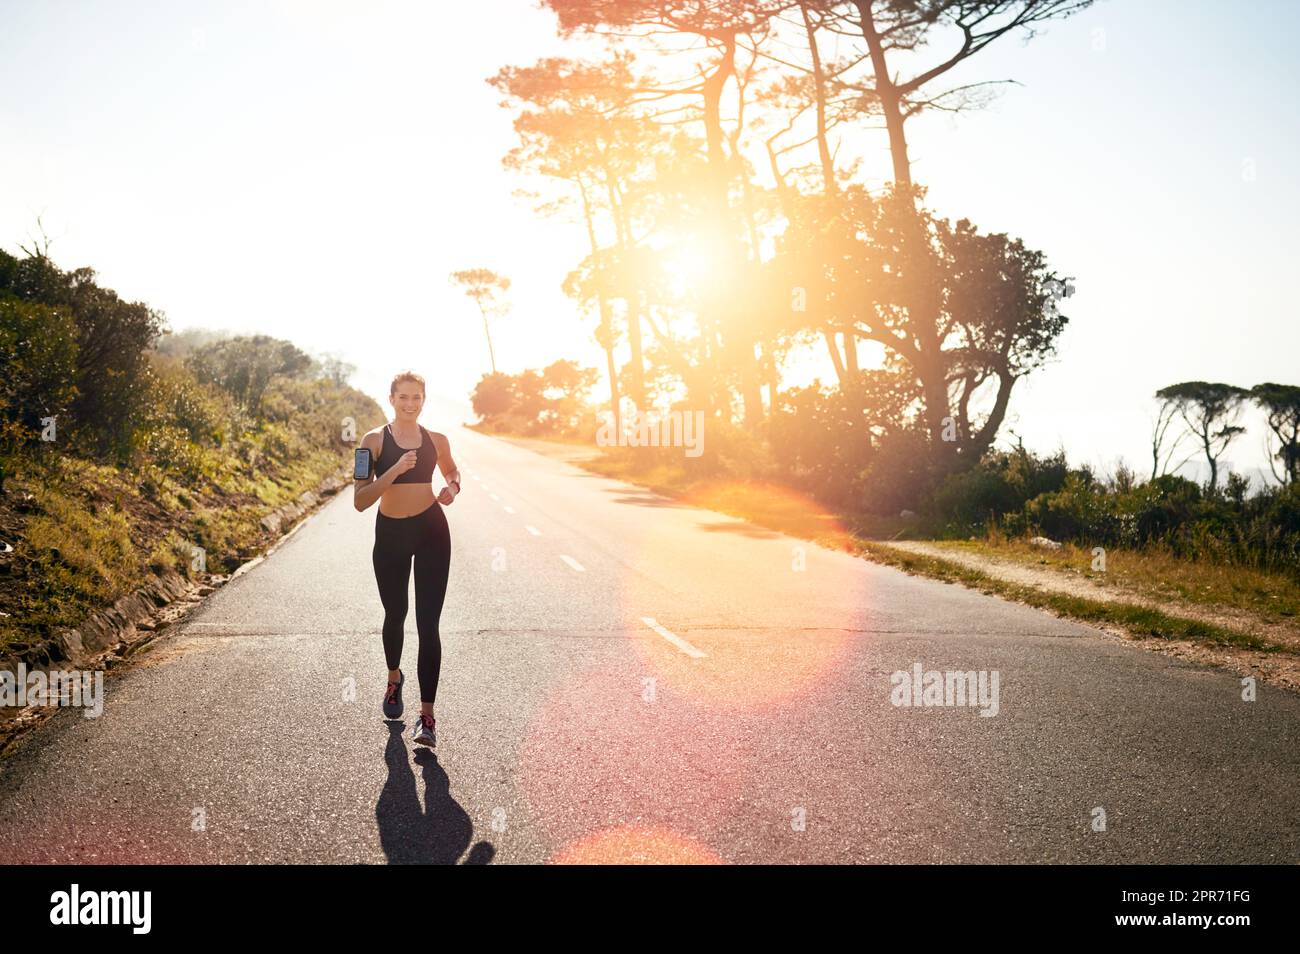 Courez pour une brûlure totale. Photo d'une jeune femme en forme qui va courir à l'extérieur. Banque D'Images